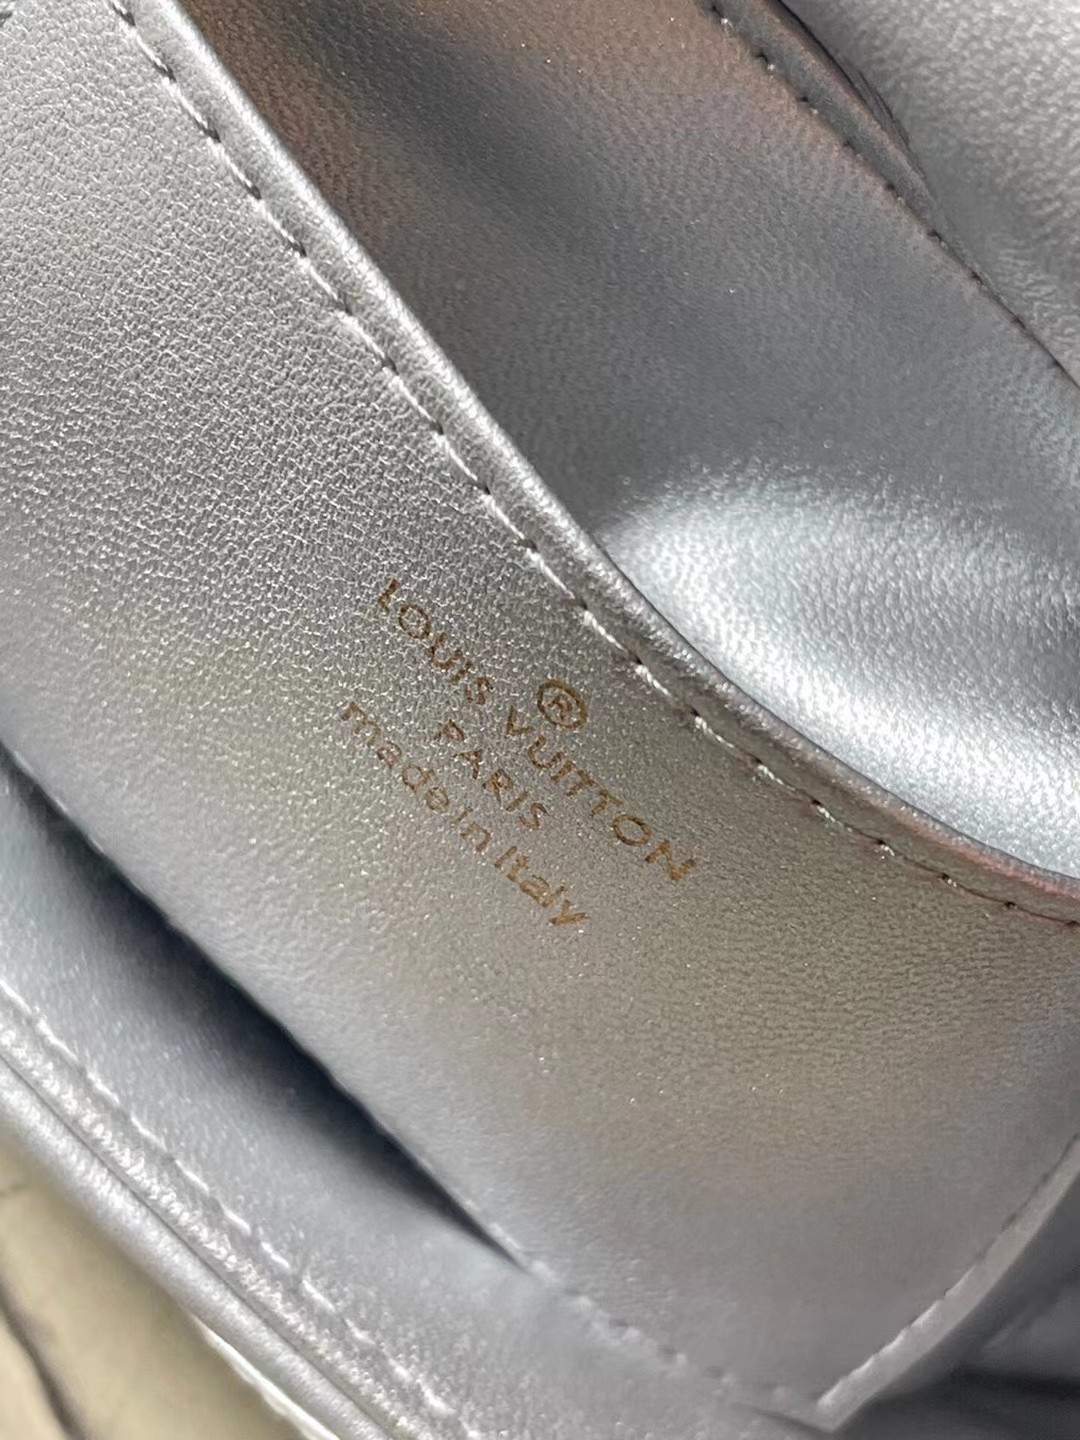 M25107银色本款G0-14中号手袋取材华美羊皮革以指缝图案致敬品牌传统行李箱设计LVTwist扭锁彰